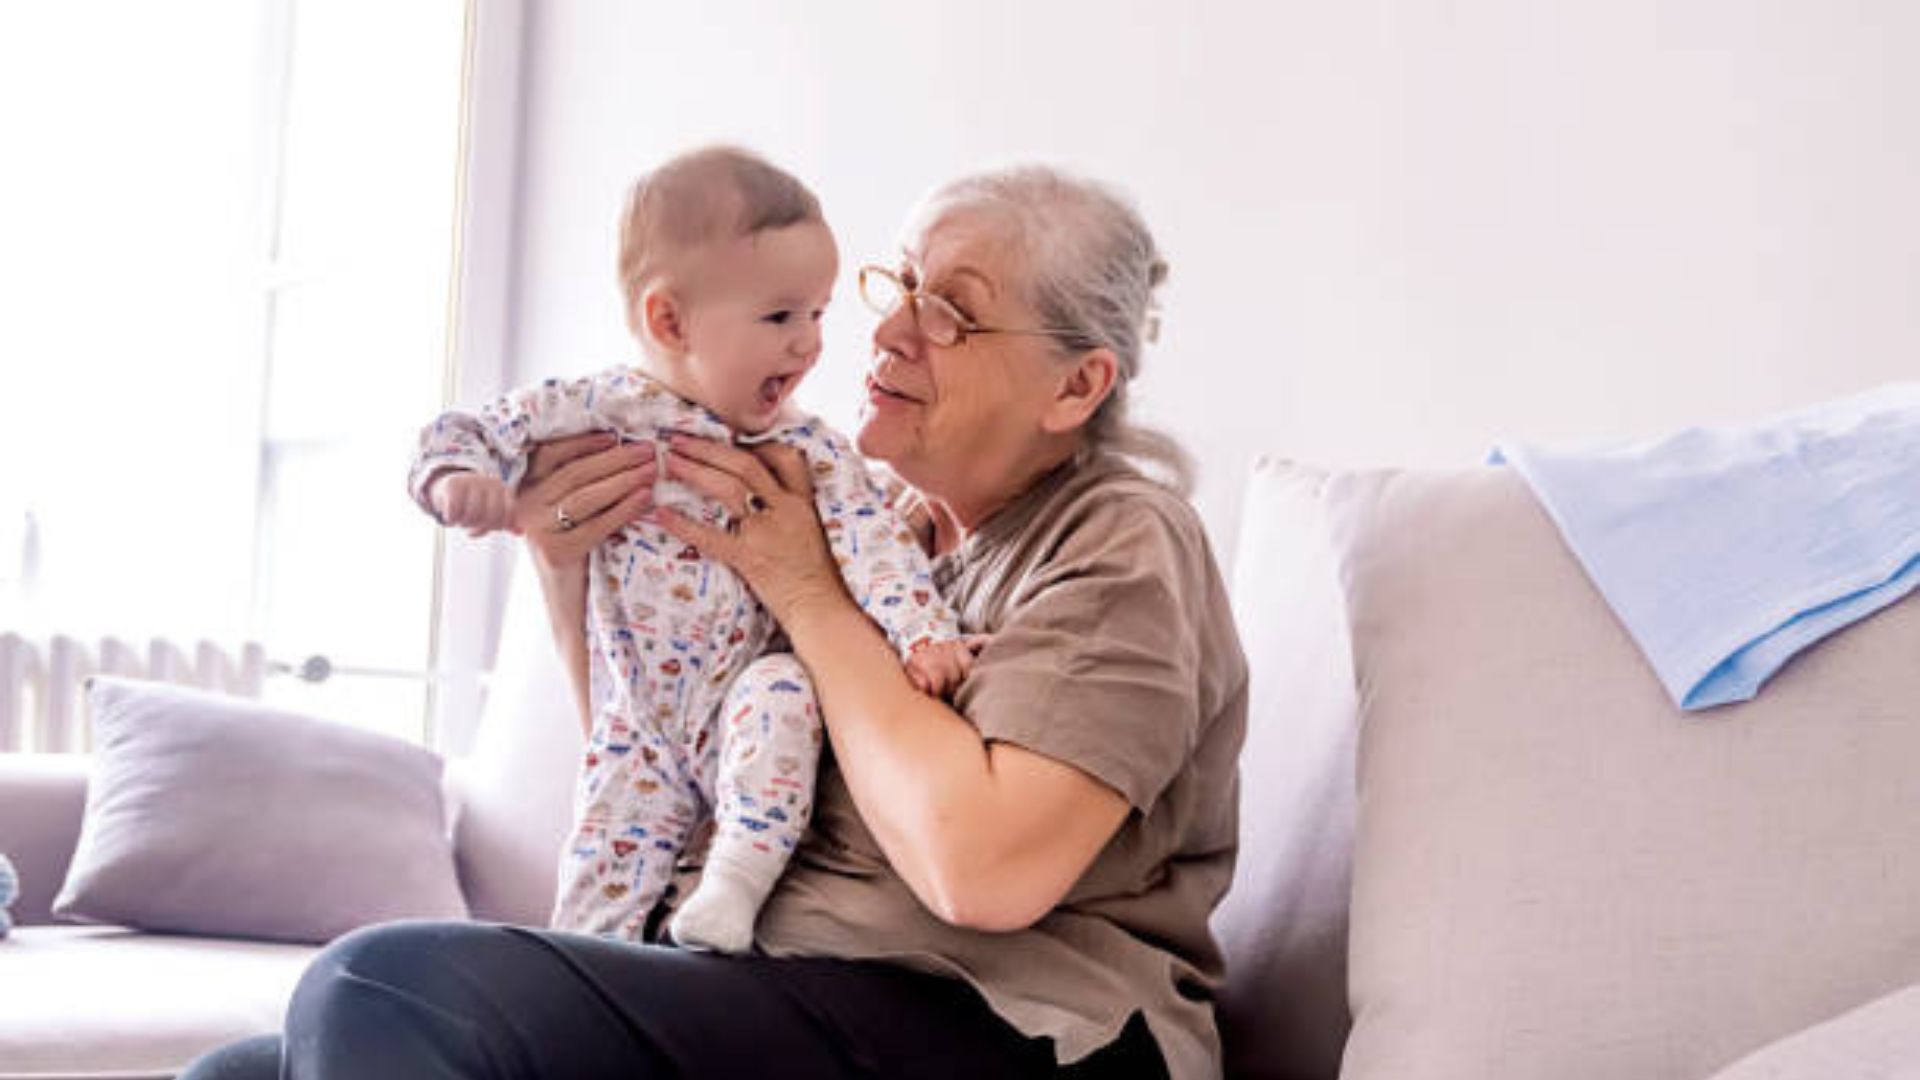 Una abuela exige 20 dólares por hora para cuidar a su nieta y recibe elogios en las redes sociales